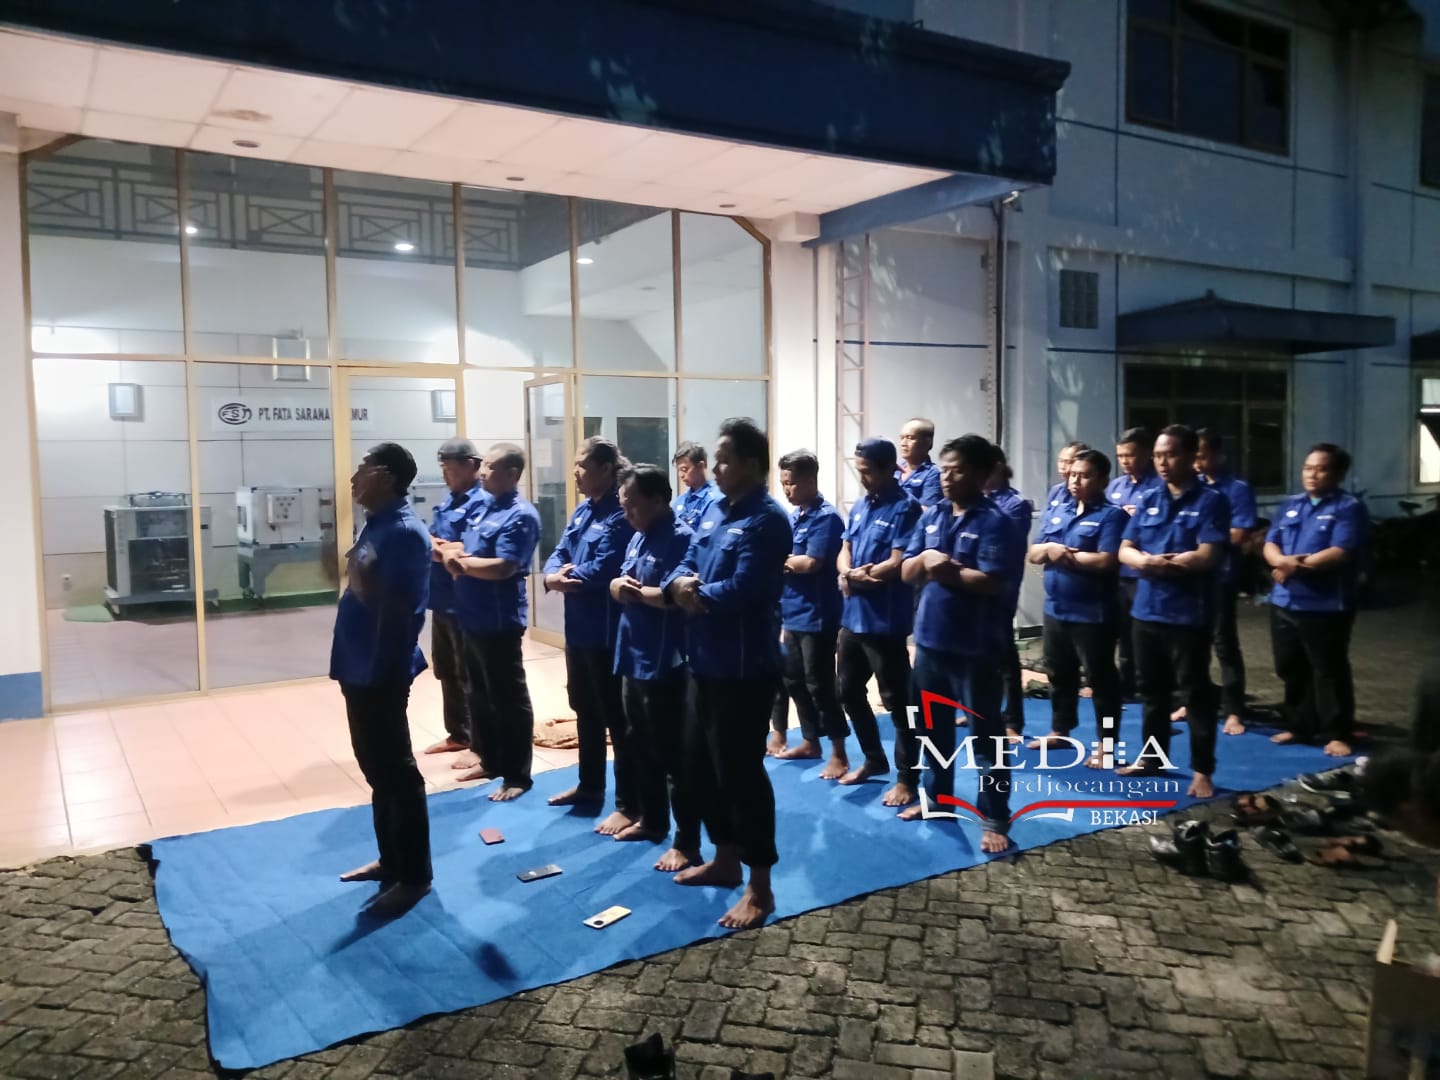 Menanti Kepastian Soal Upah, Karyawan Pabrik di Bekasi Lakukan Sholat Magrib Berjamaah Depan Perusahaan